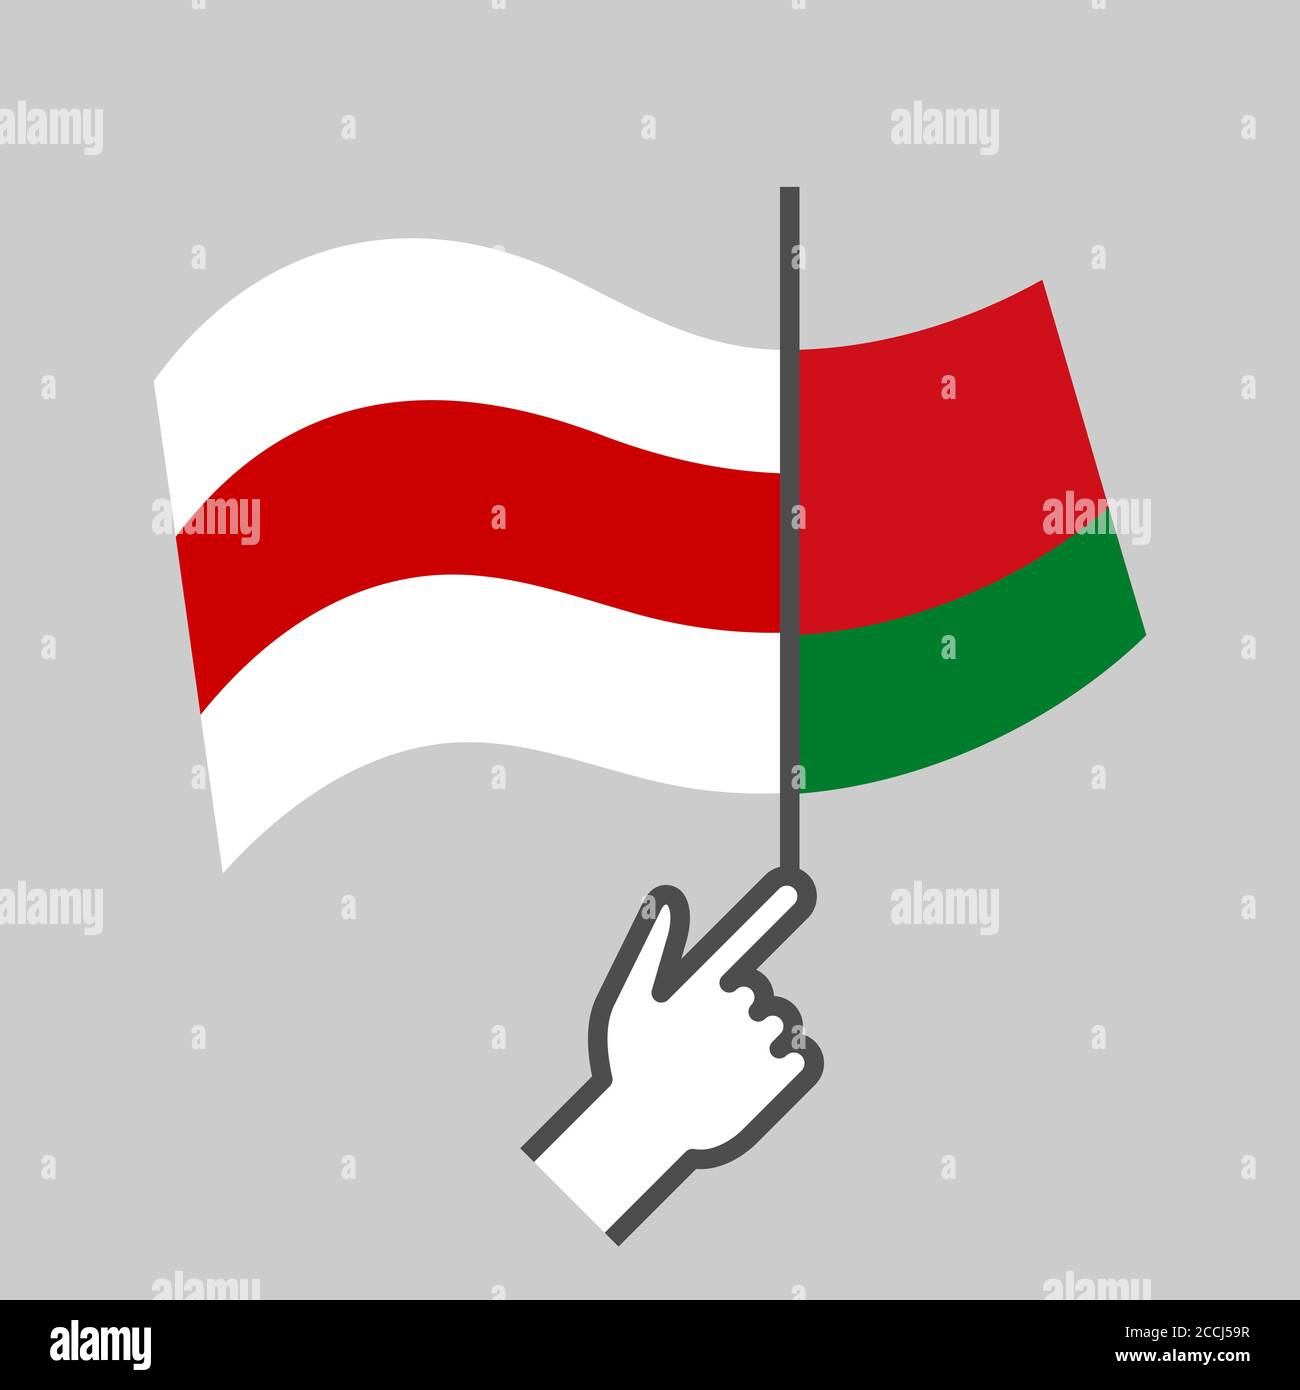 Alte in neue markieren. Proteste in Belarus. Veränderung eines autoritären diktatorischen Regimes. Demokratie. Neues Weißrussland. Rote weiße Flagge. T-Shirt-Druck. Vektor Stock Vektor